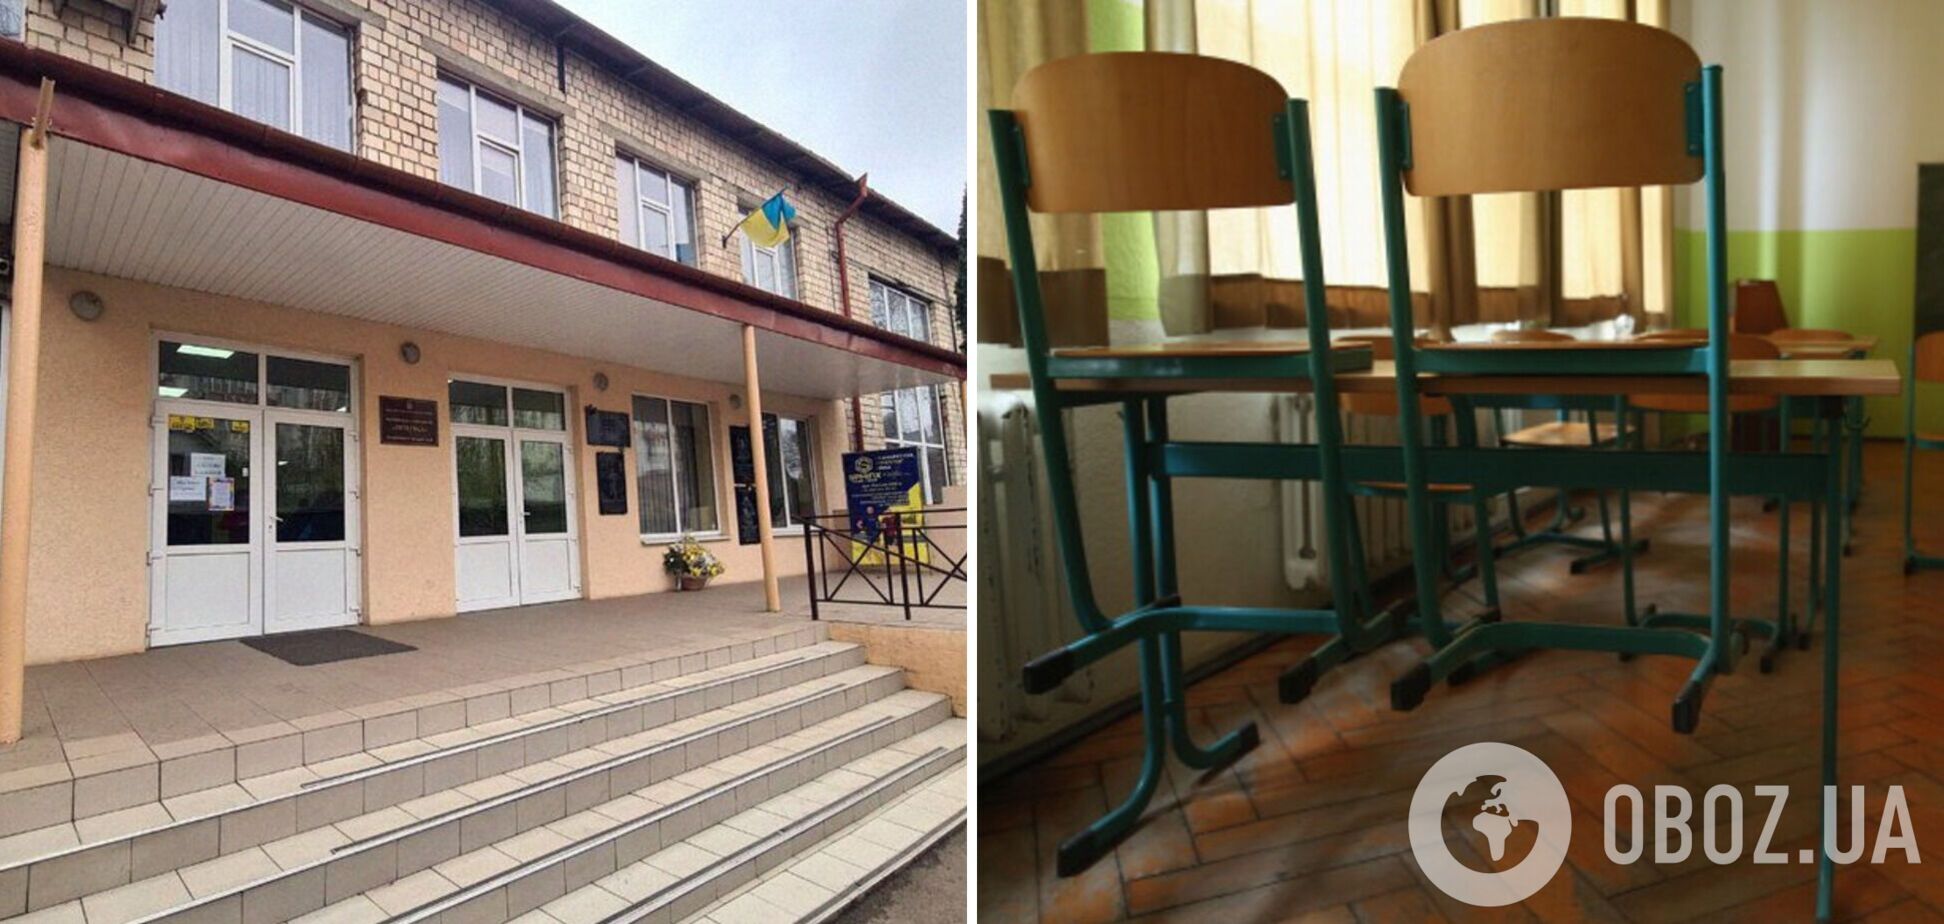 Предвзятое отношение учителей и непригодное укрытие: стали известны результаты проверки лицея в Черновцах, где полисменка обзывала детей тупыми